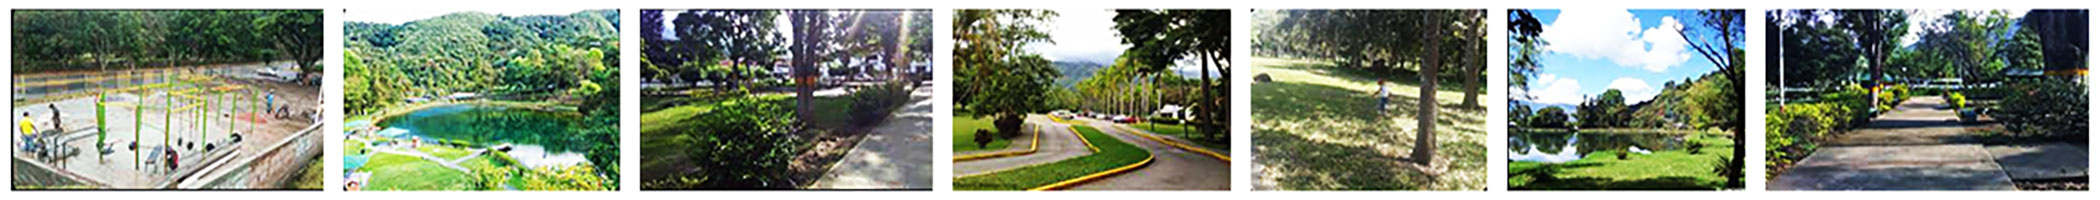 Parques Recreacionales del Estado Trujillo Venezuela